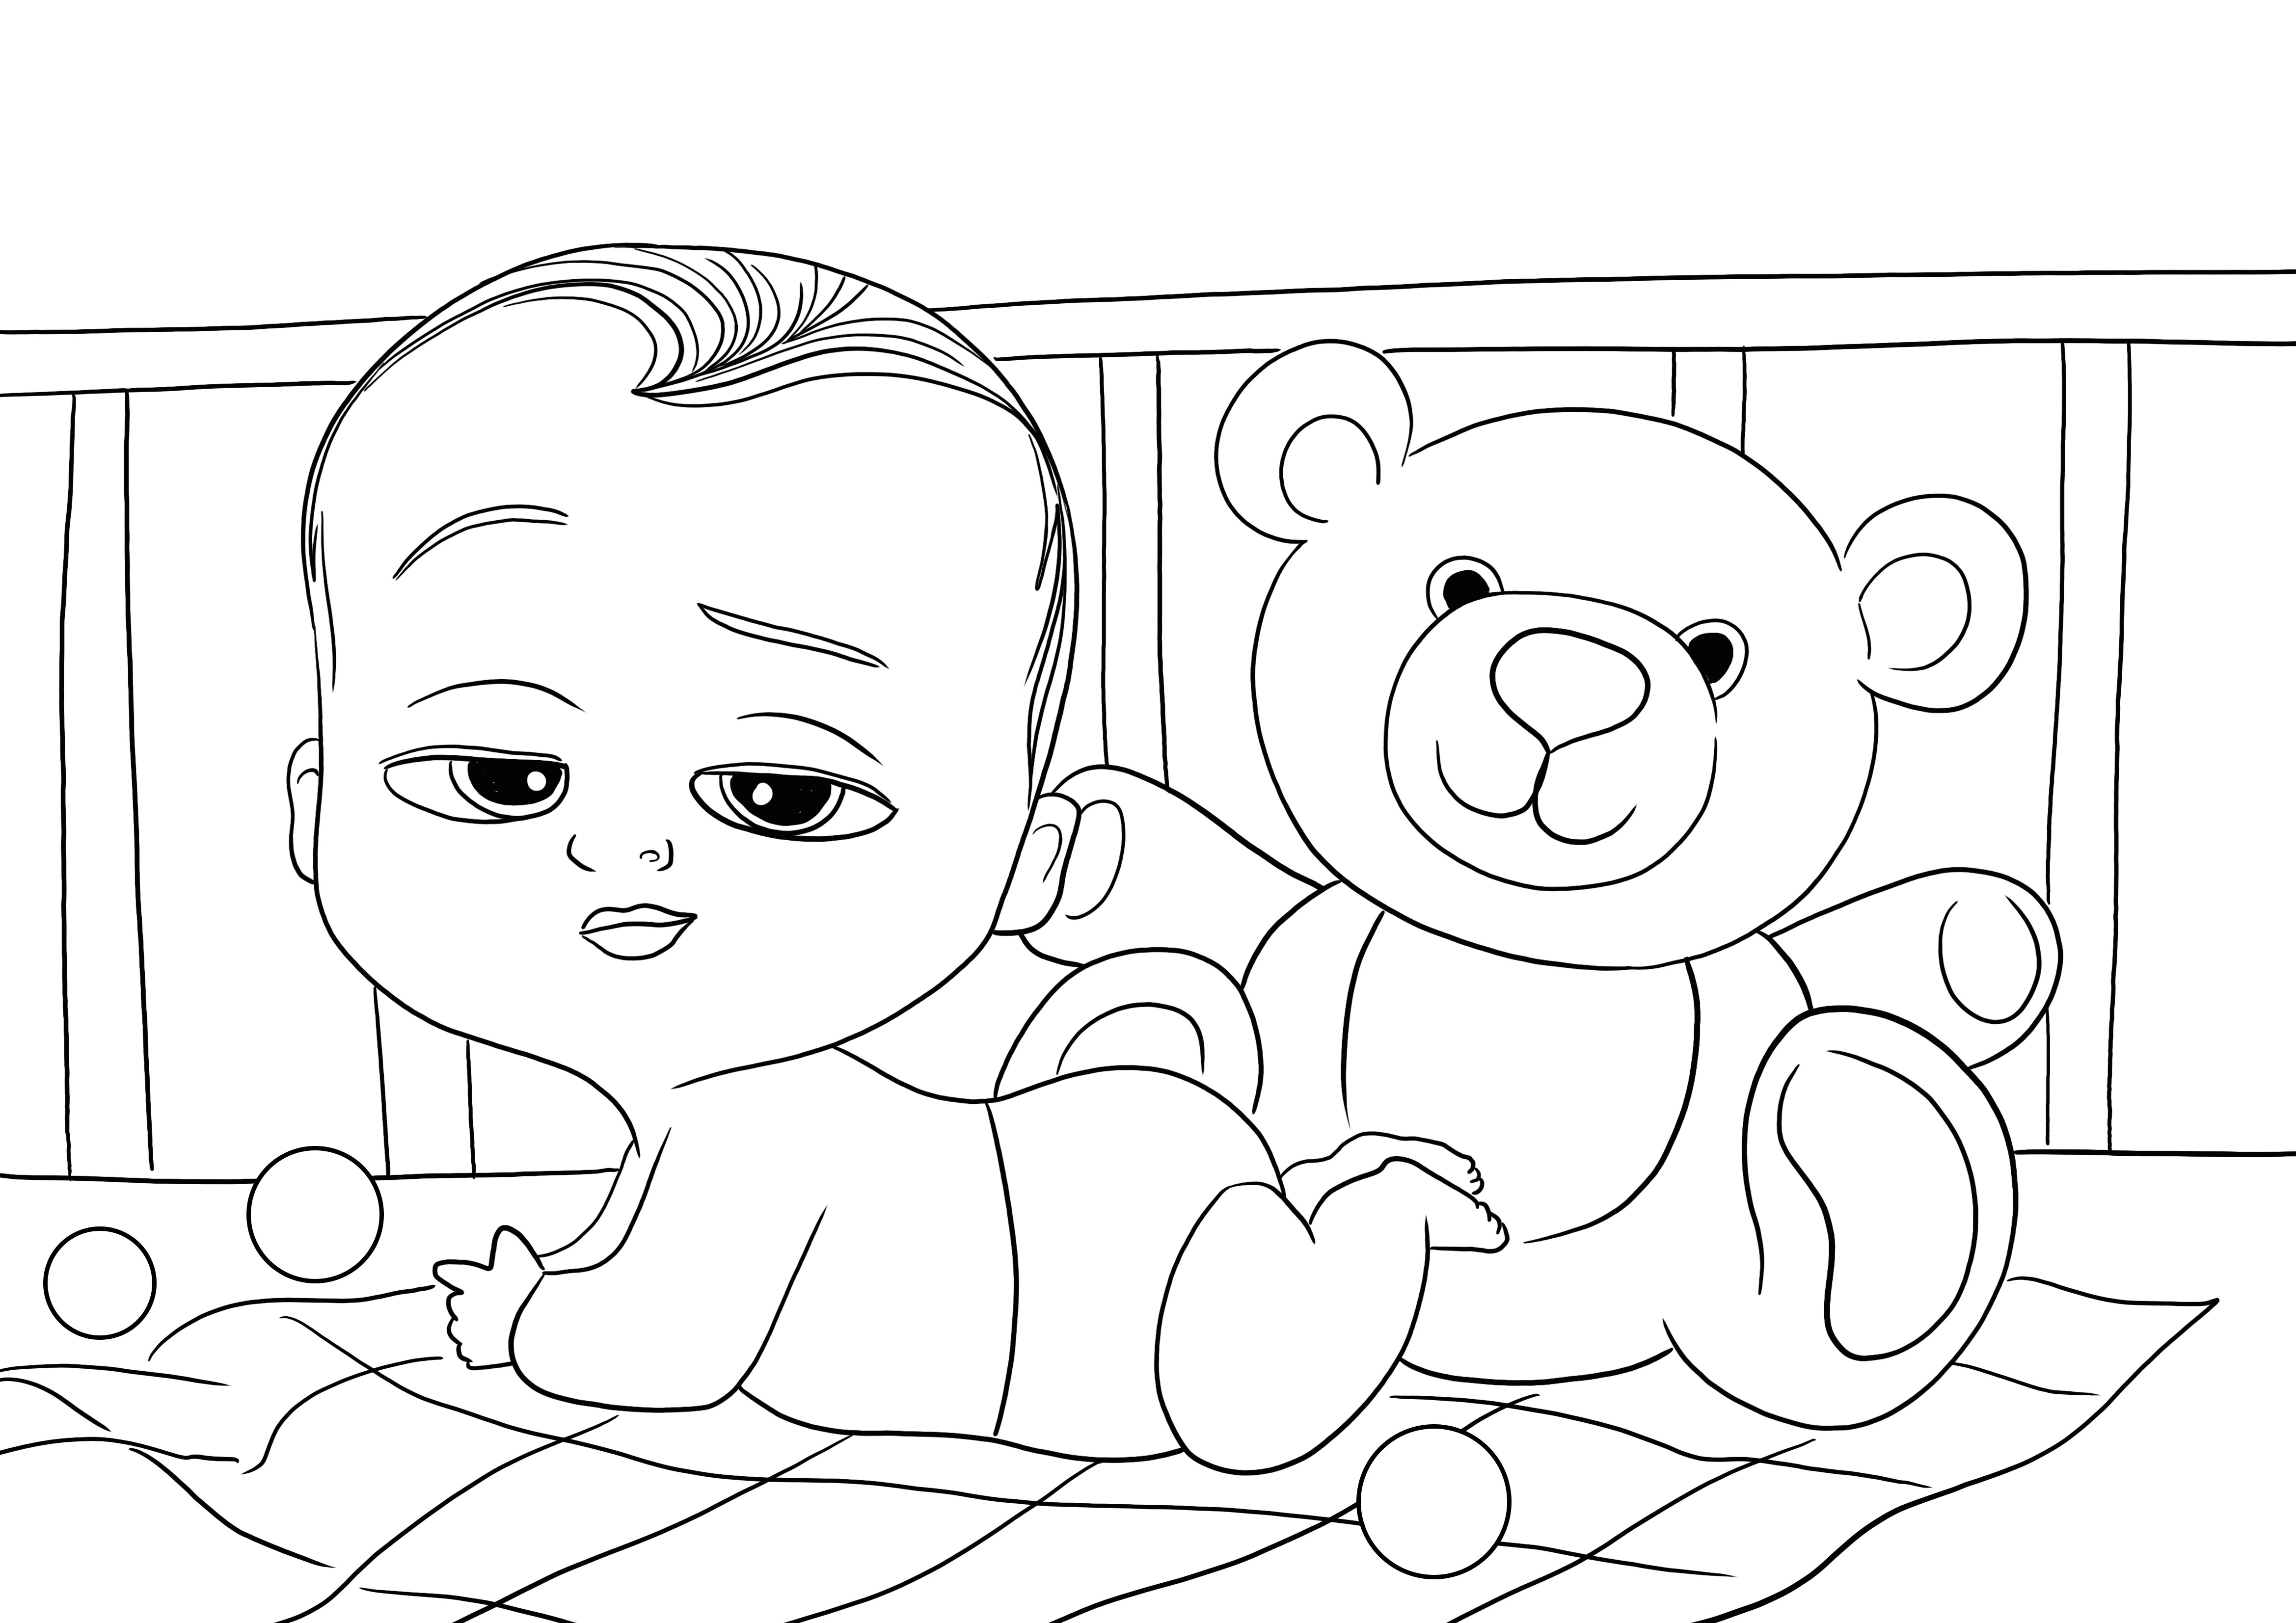 Gratis untuk mengunduh gambar mewarnai Baby Boss dan Teddy Bear untuk diwarnai